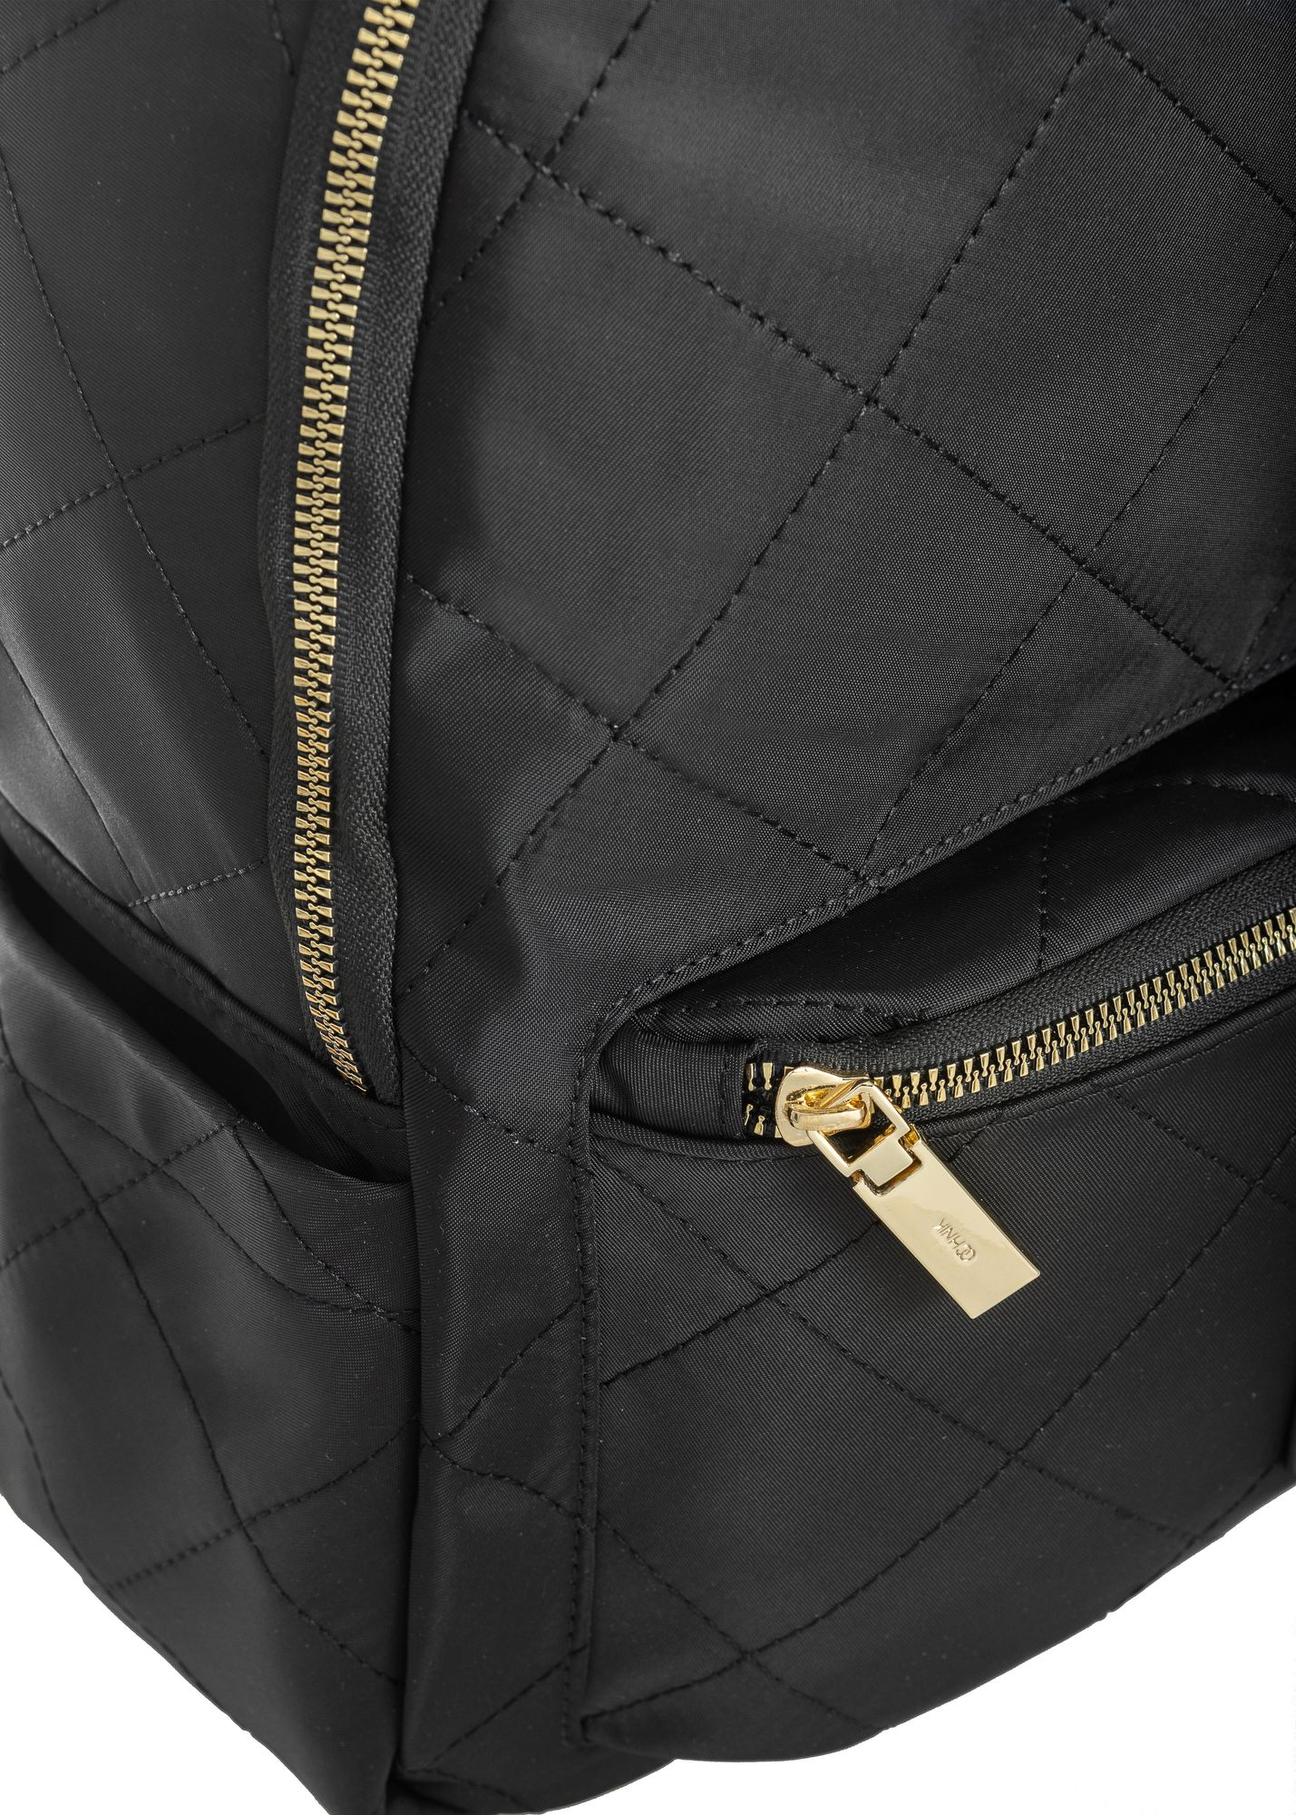 Czarny pikowany plecak damski TOREN-0265-99(Z23)